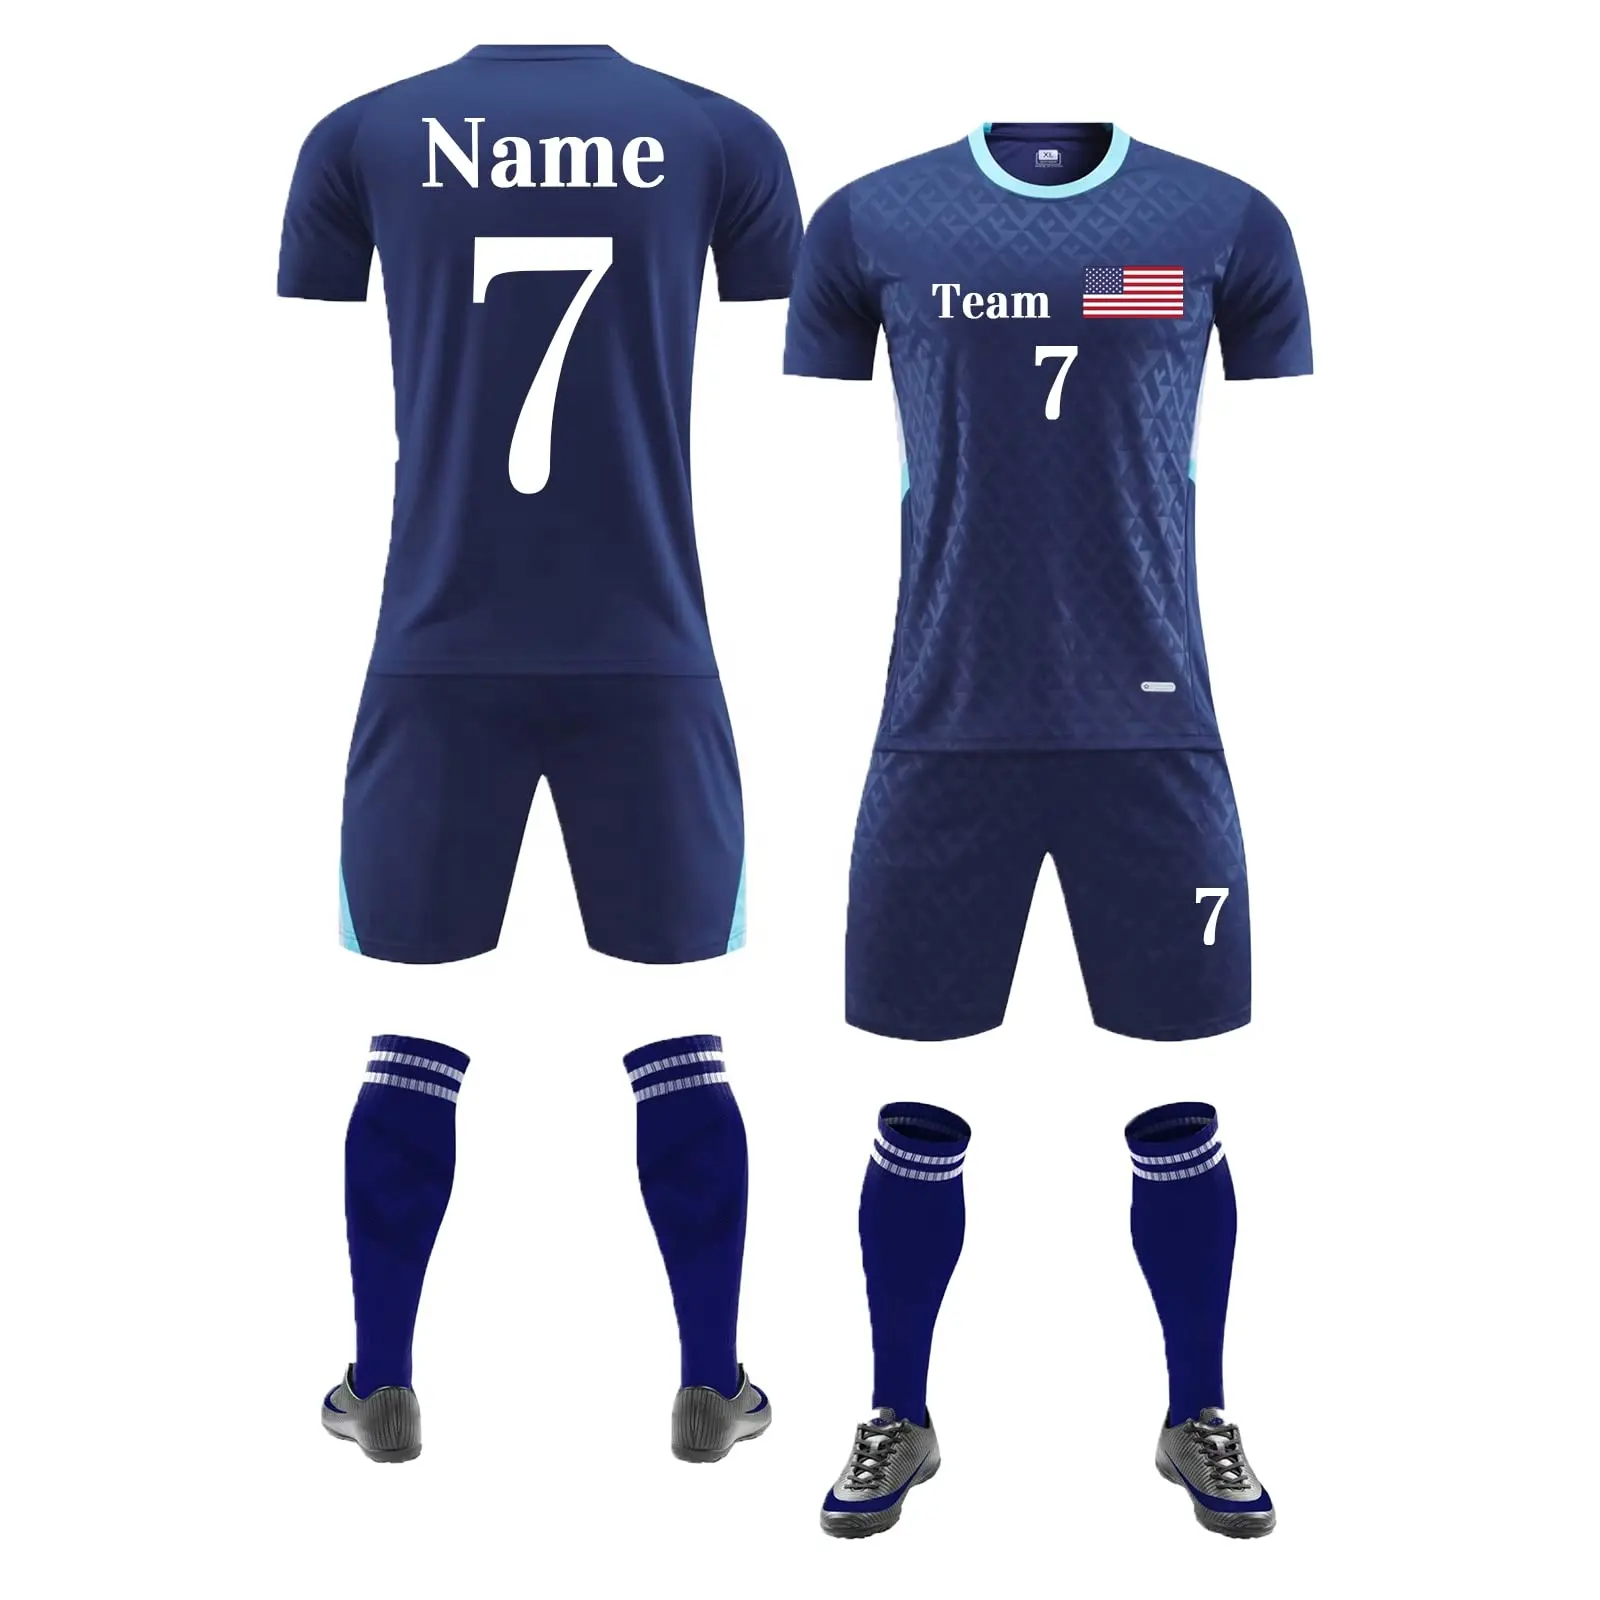 جديد العلامة التجارية الرجال النساء التسامي PrintTop ملابس رياضية التدريب قمصان كرة القدم رياضية فريق نادي موحدة زي قمصان كرة قدم